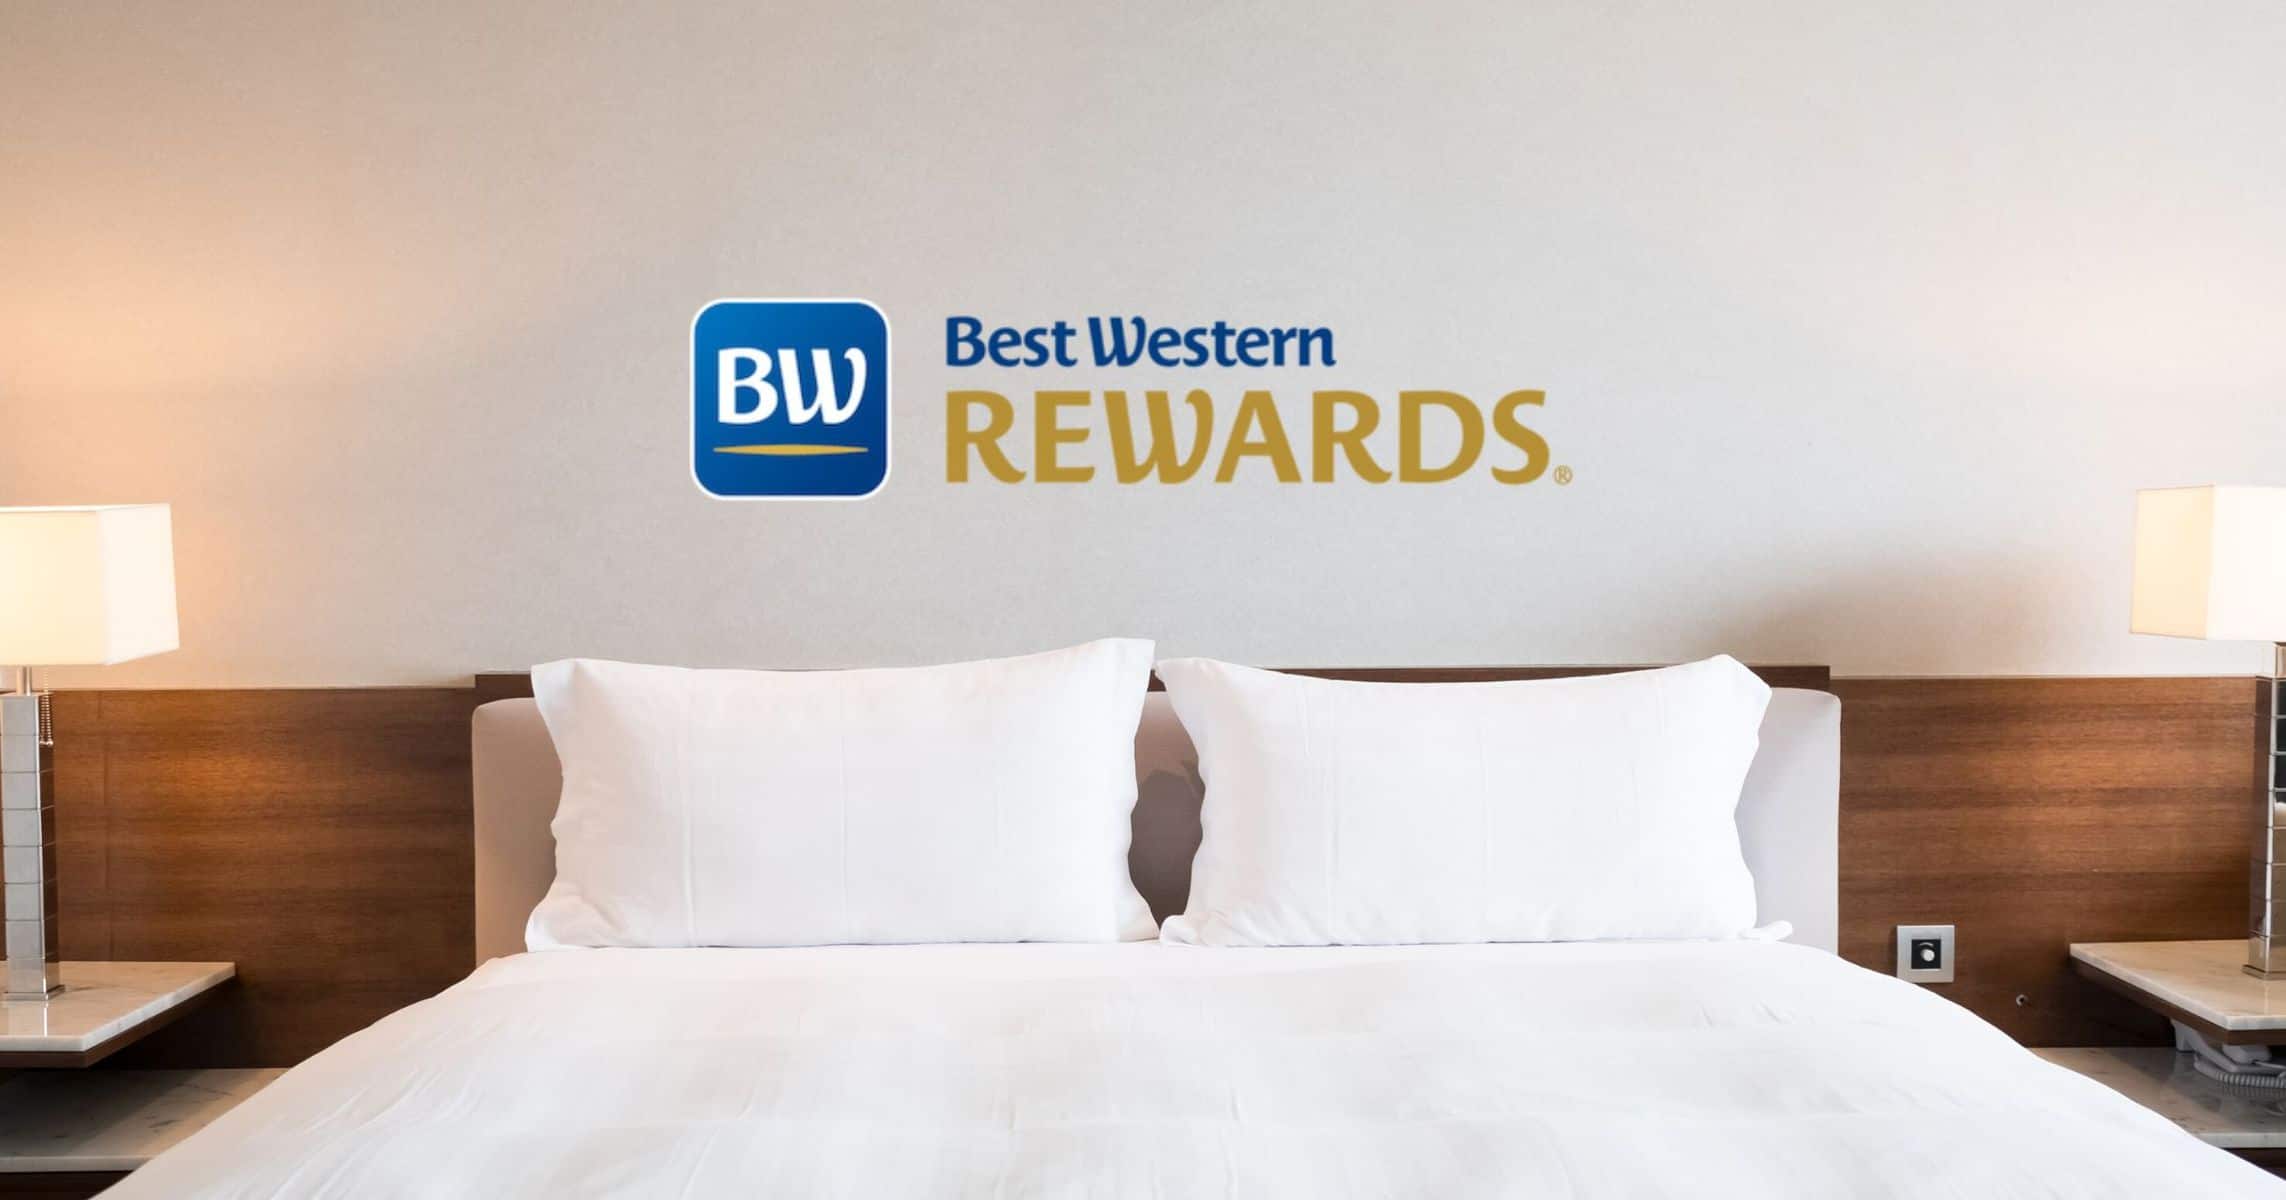 Best Western Rewards Featured